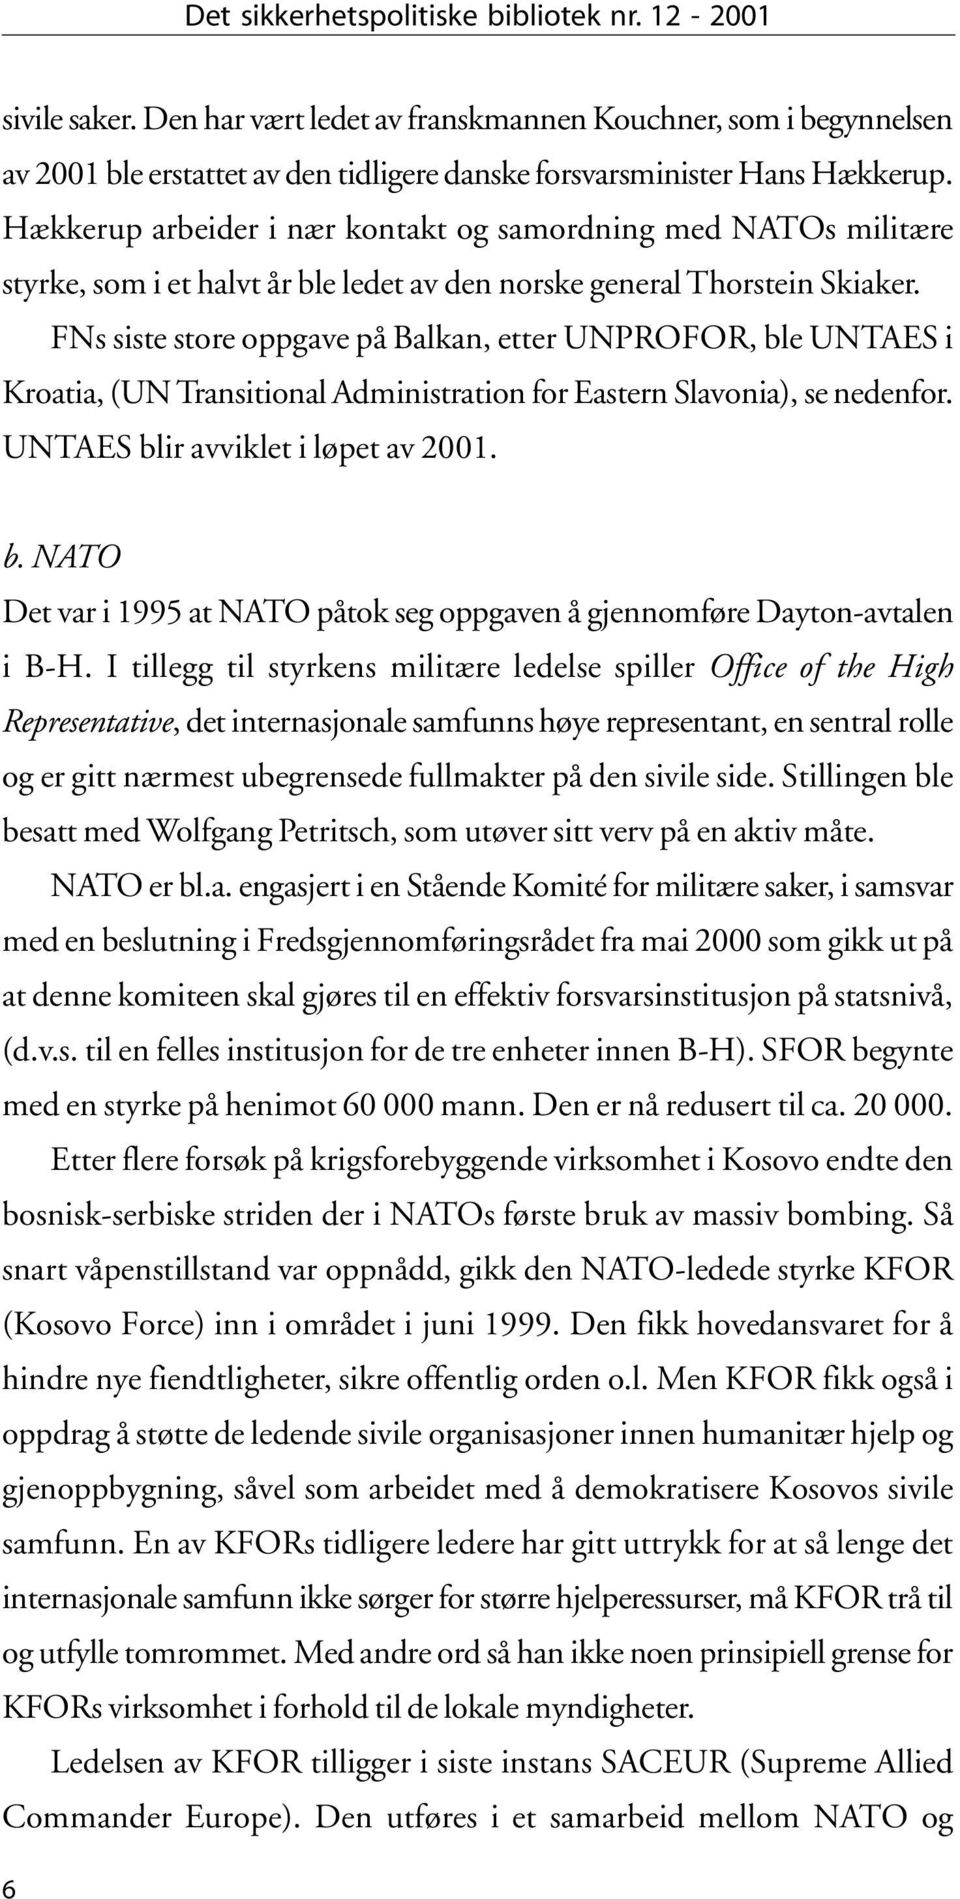 FNs siste store oppgave på Balkan, etter UNPROFOR, ble UNTAES i Kroatia, (UN Transitional Administration for Eastern Slavonia), se nedenfor. UNTAES blir avviklet i løpet av 2001. b. NATO Det var i 1995 at NATO påtok seg oppgaven å gjennomføre Dayton-avtalen i B-H.